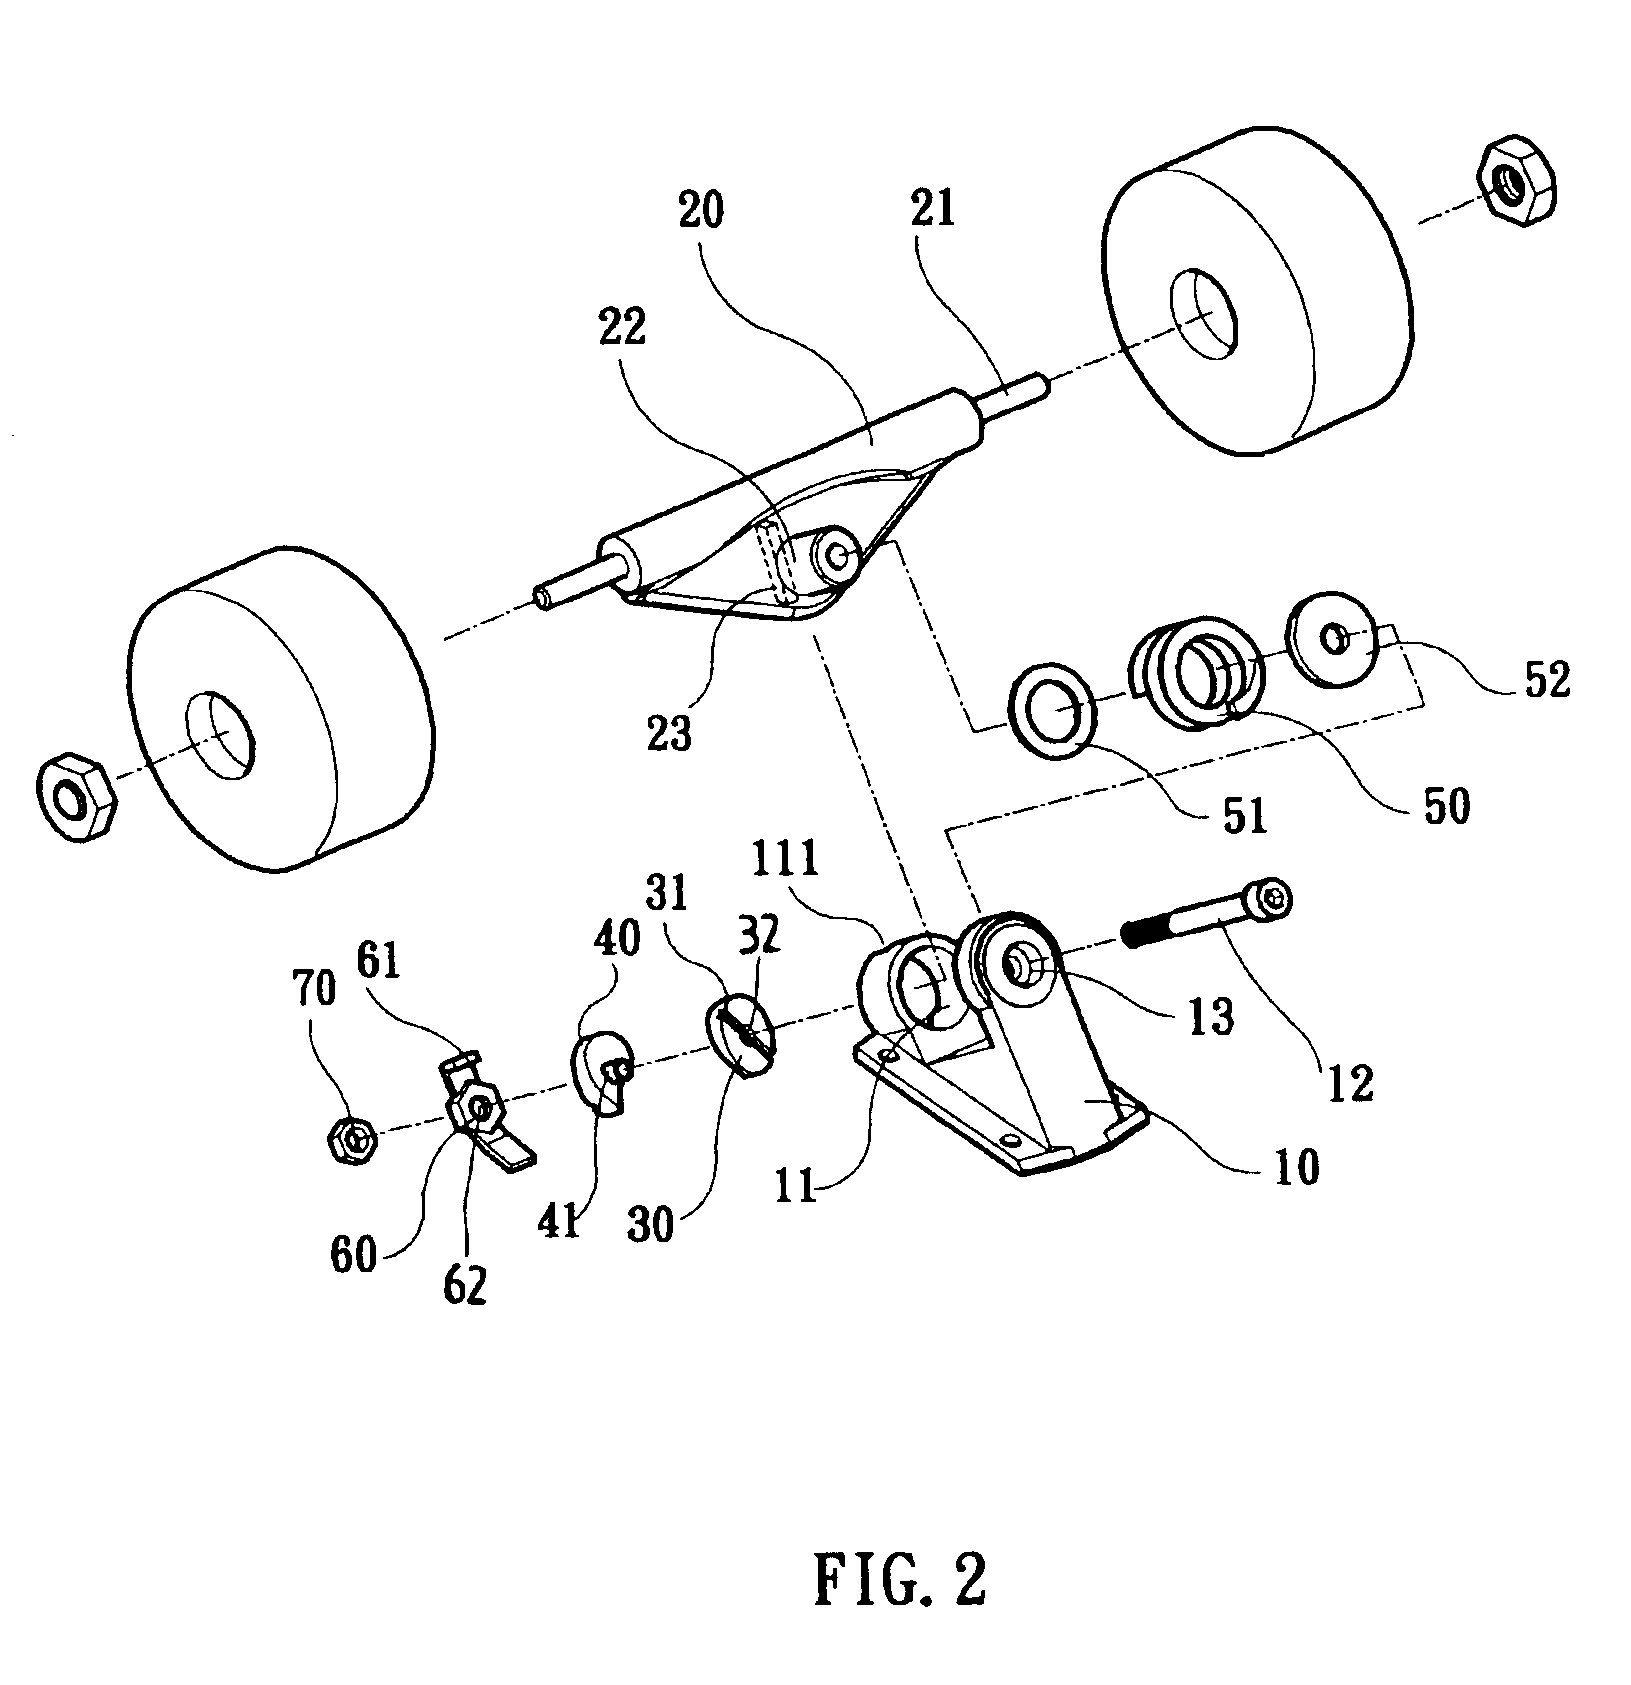 Wheel holder assembly for a skateboard